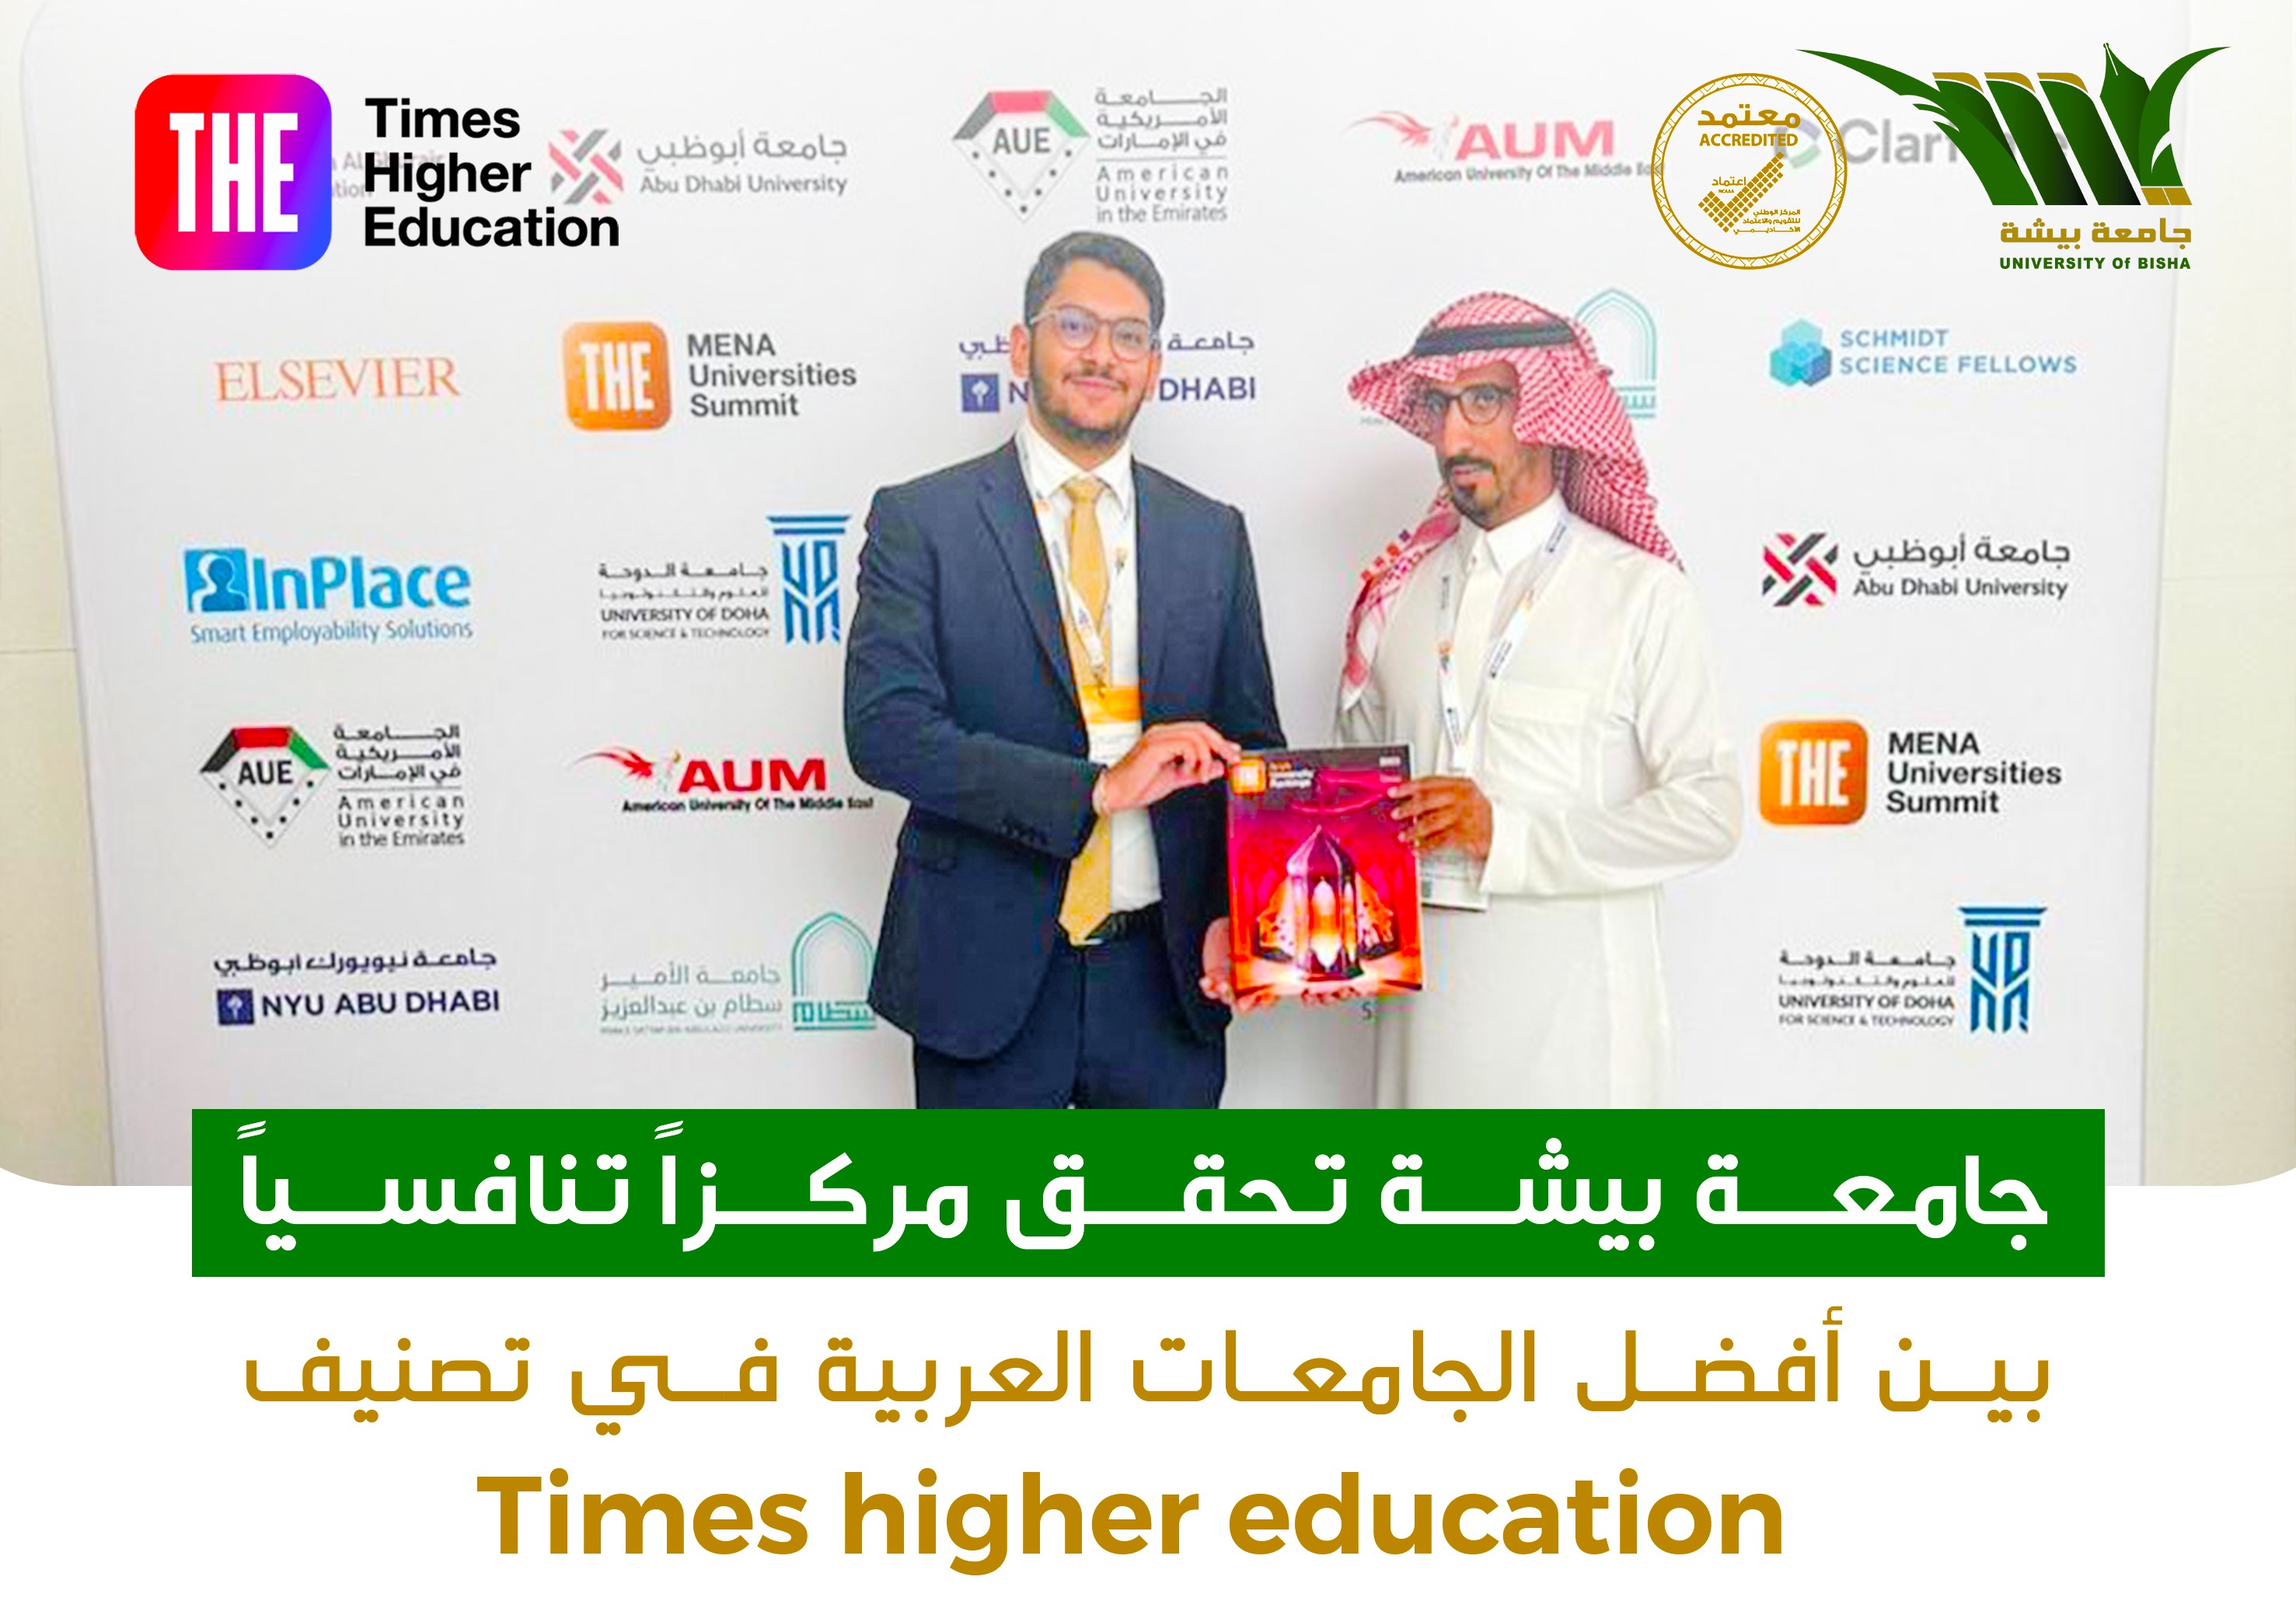 جامعة بيشة تحقق مركزاً تنافسياً بين أفضل الجامعات العربية في تصنيف Times higher education 